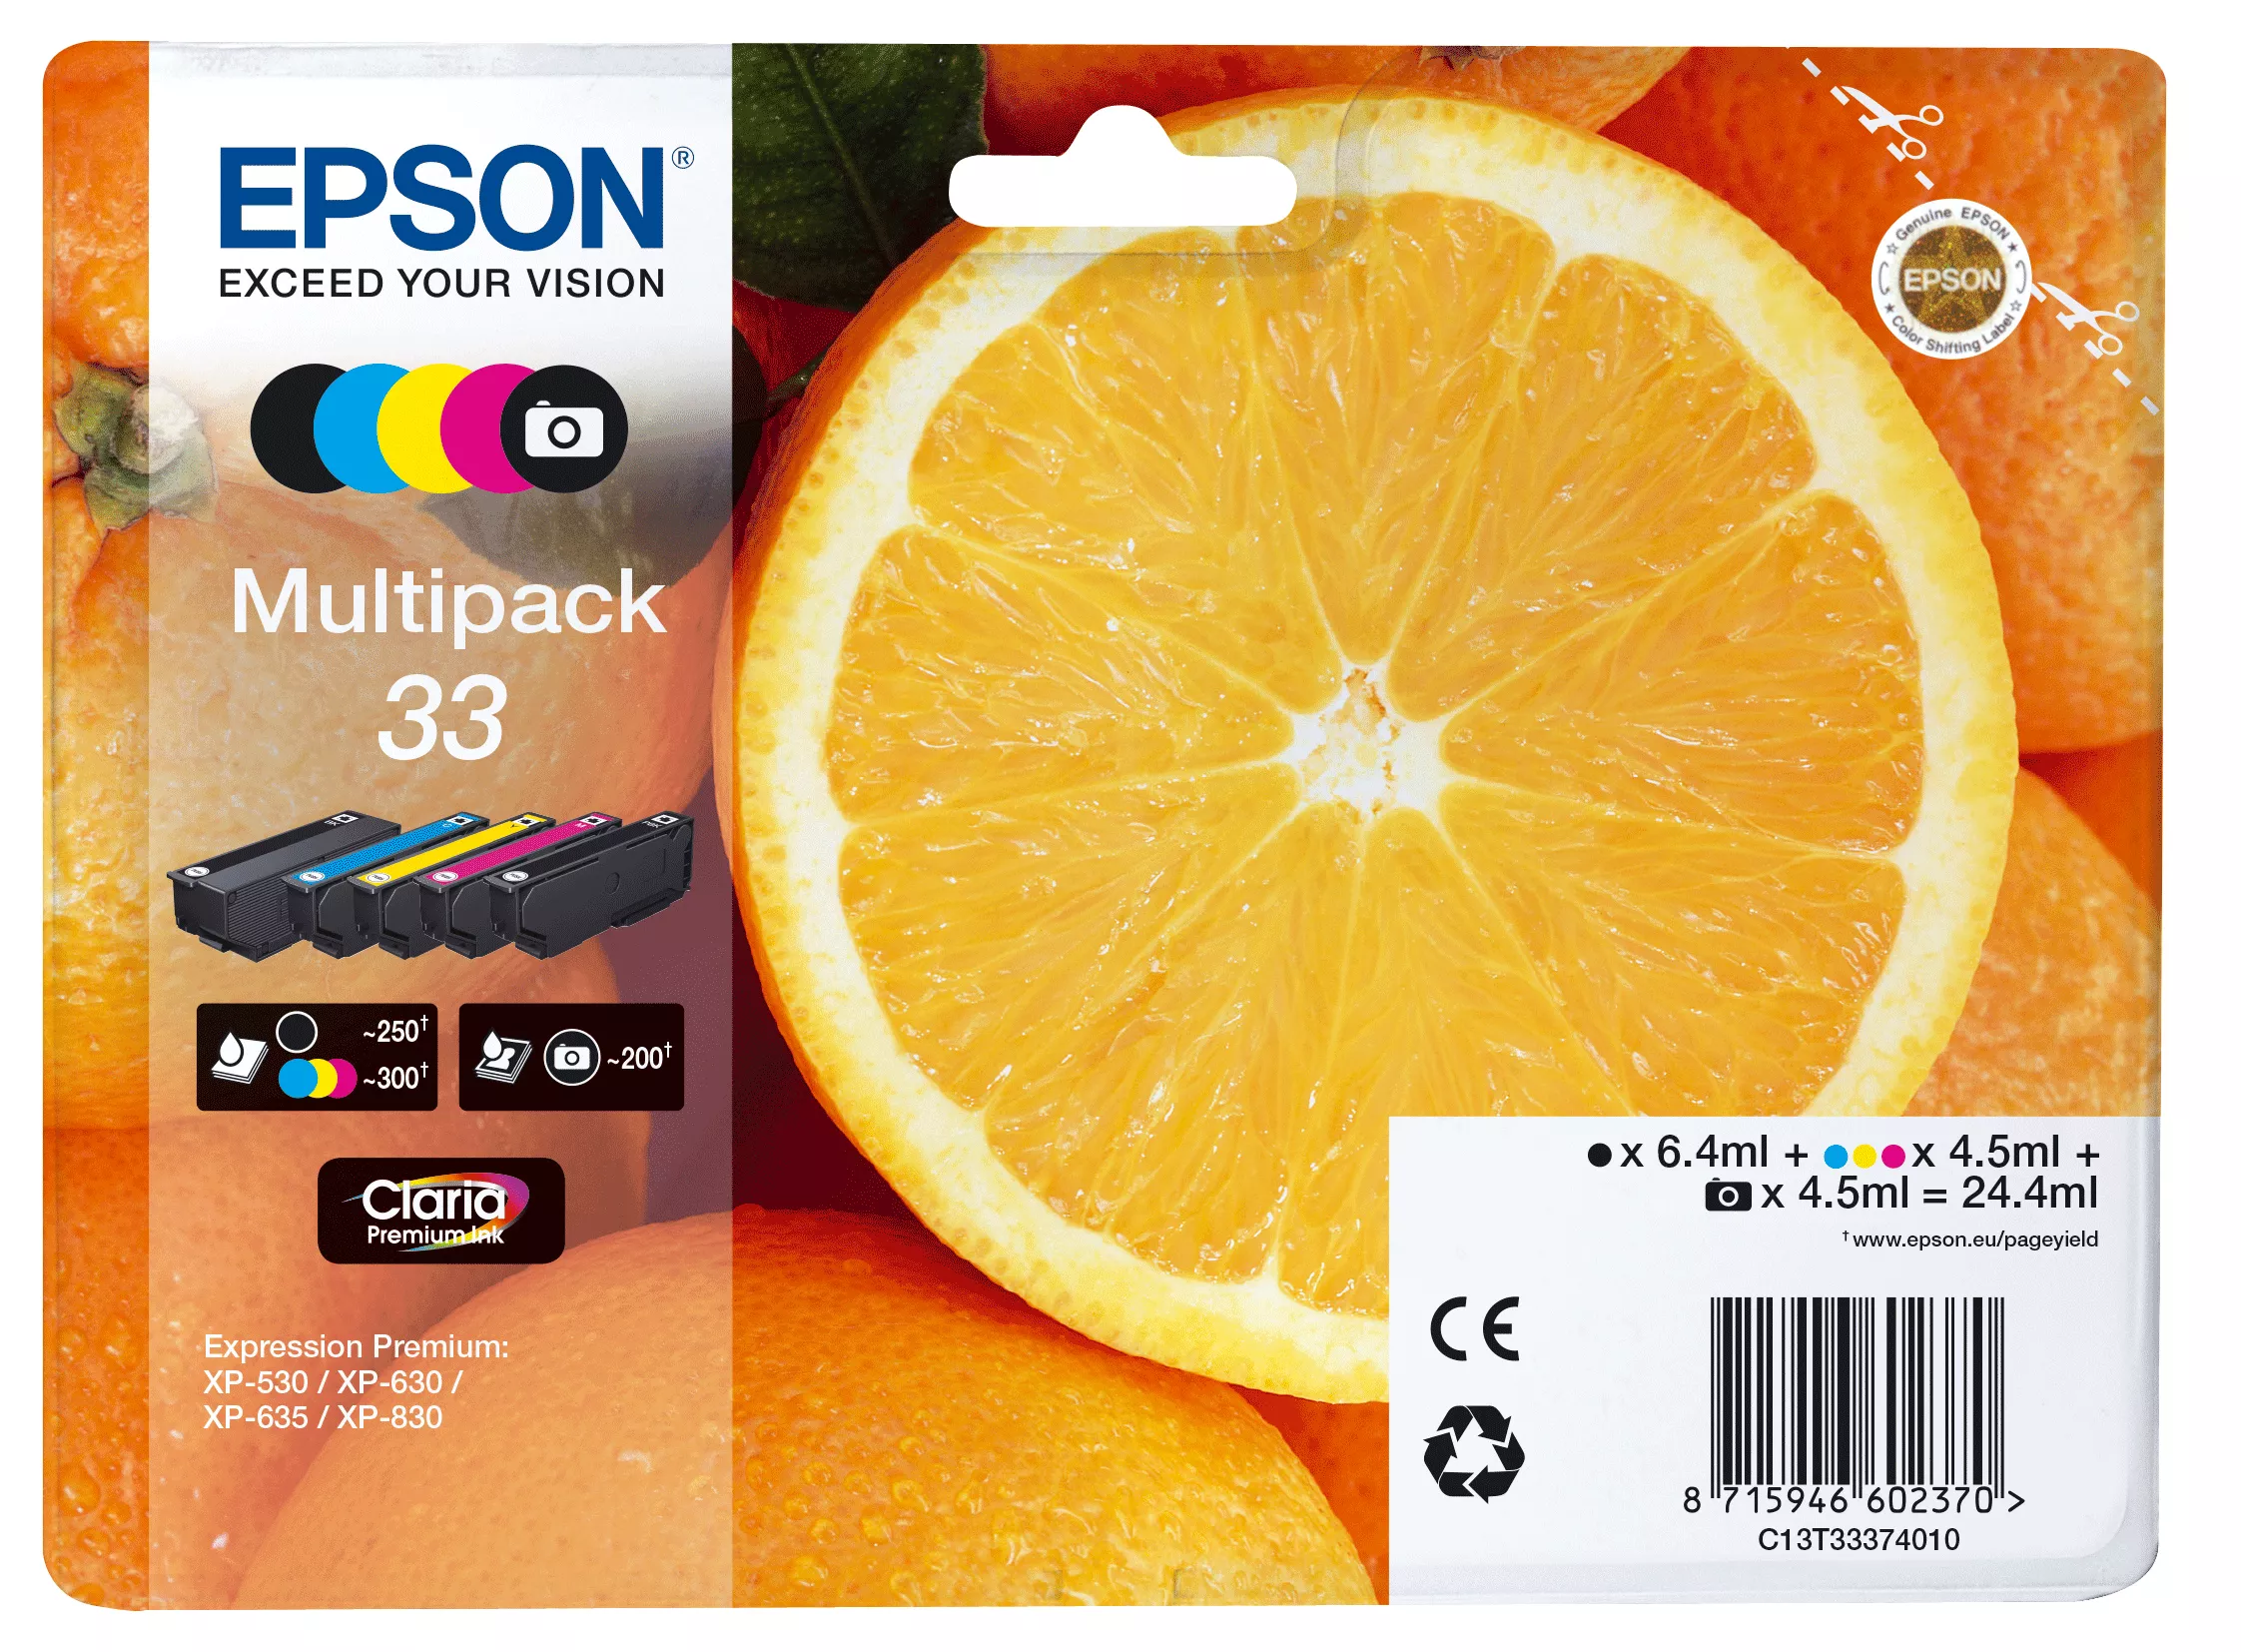 Revendeur officiel EPSON Multipack Oranges alarmé - Encre Claria Premium